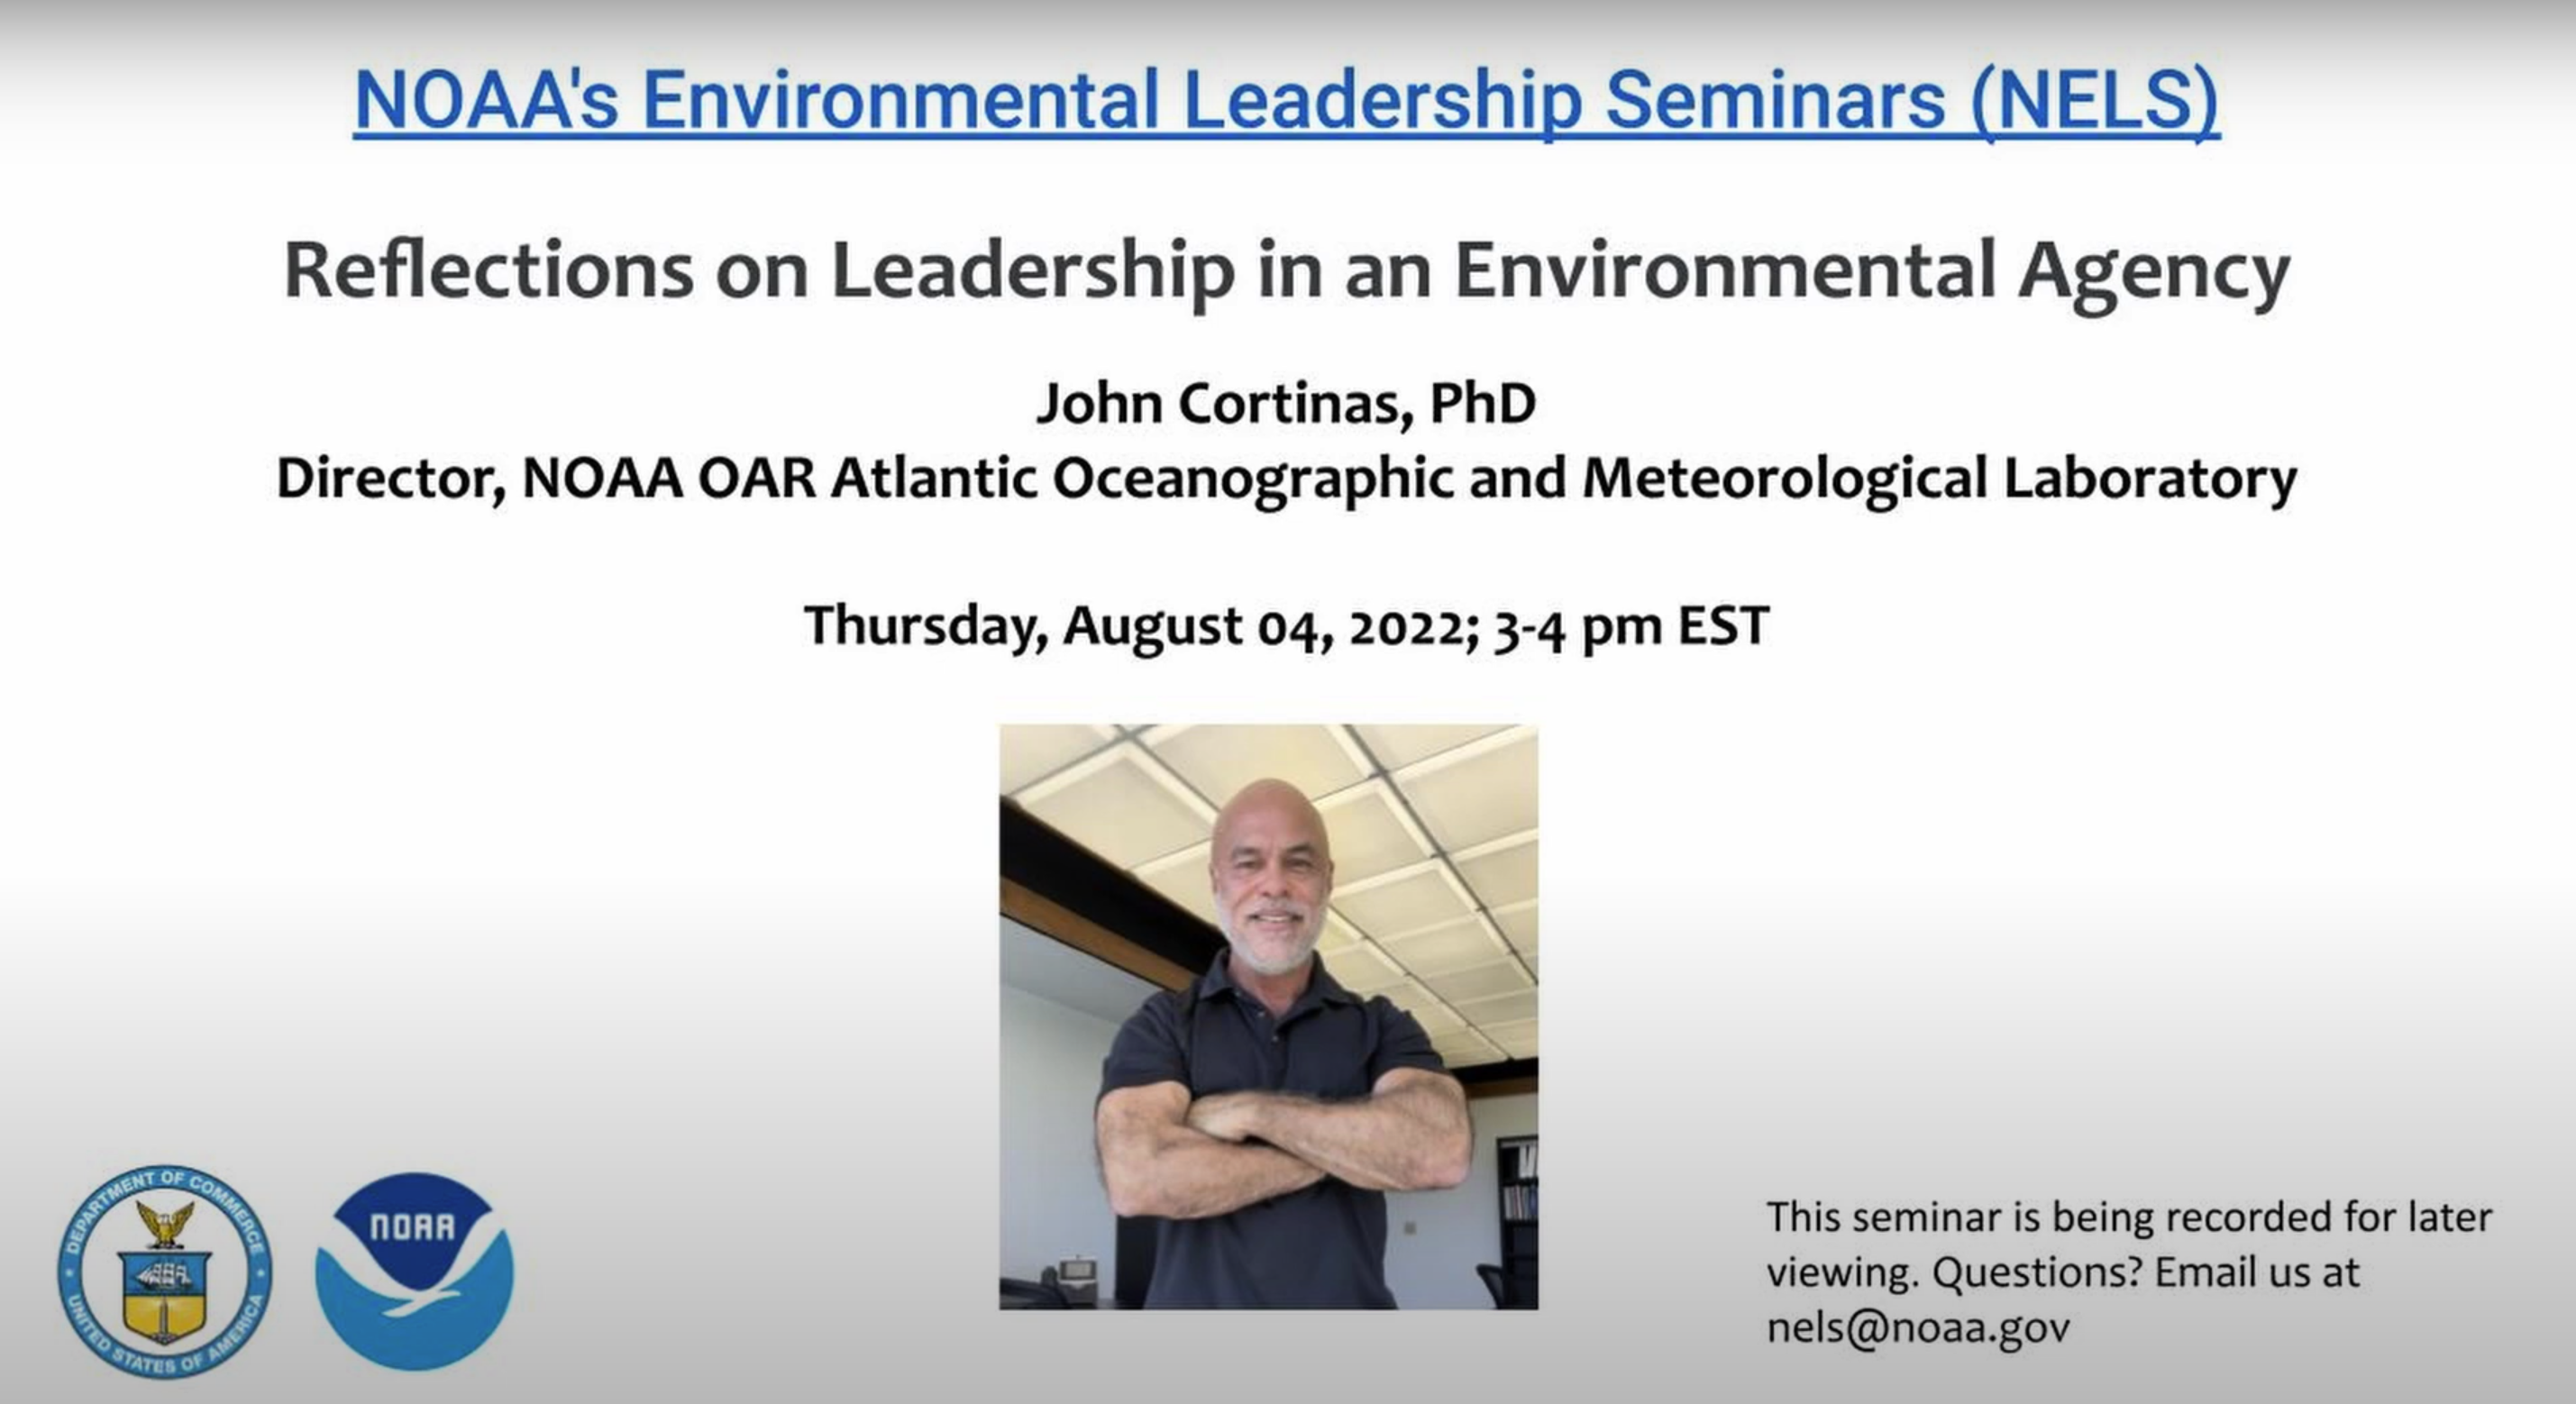 Diapositiva del título del Seminario de Liderazgo Ambiental de la NOAA de John Cortinas. Charla titulada 